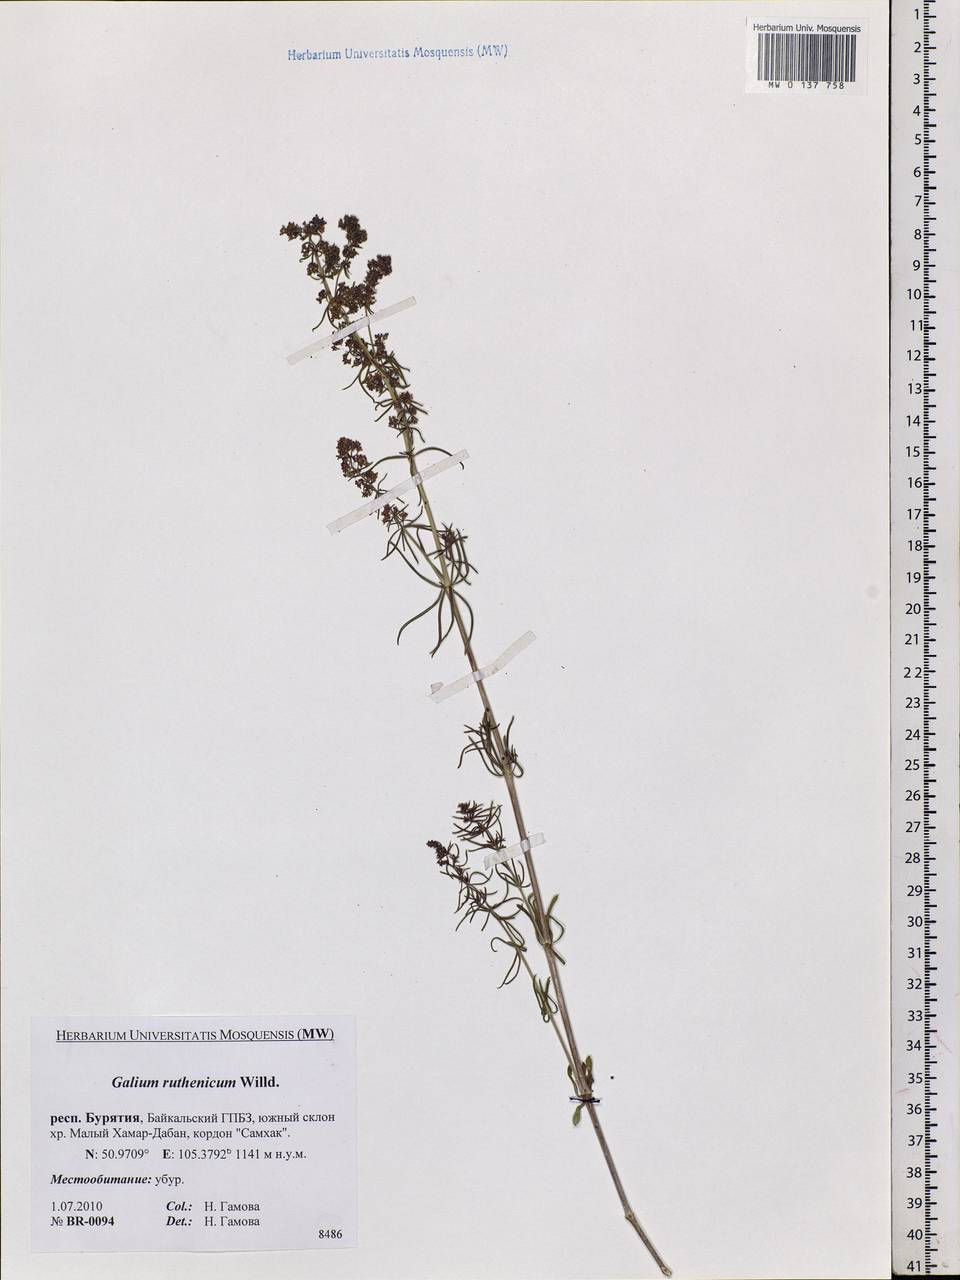 Galium verum subsp. verum, Siberia, Baikal & Transbaikal region (S4) (Russia)